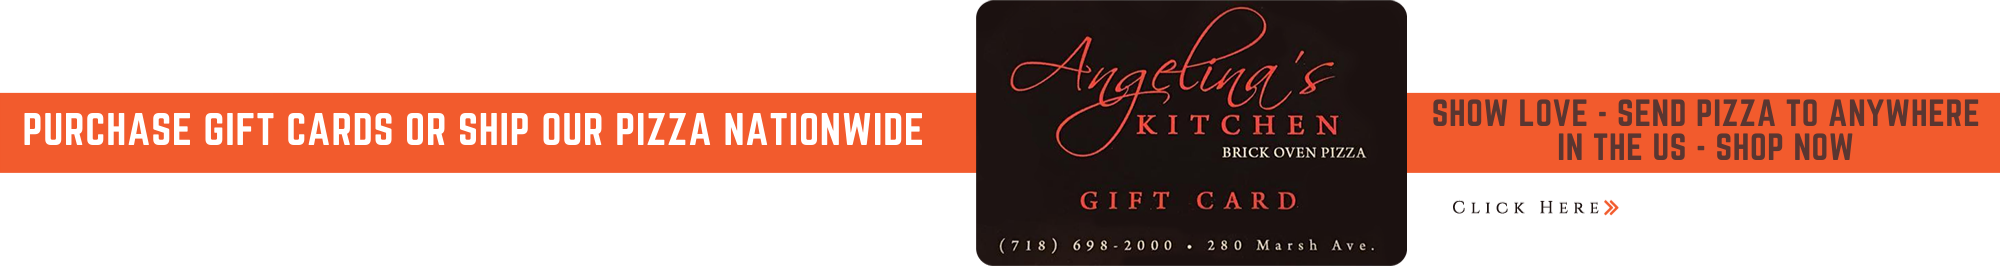 Angelina S Kitchen, Angelinas Kitchen Staten Island